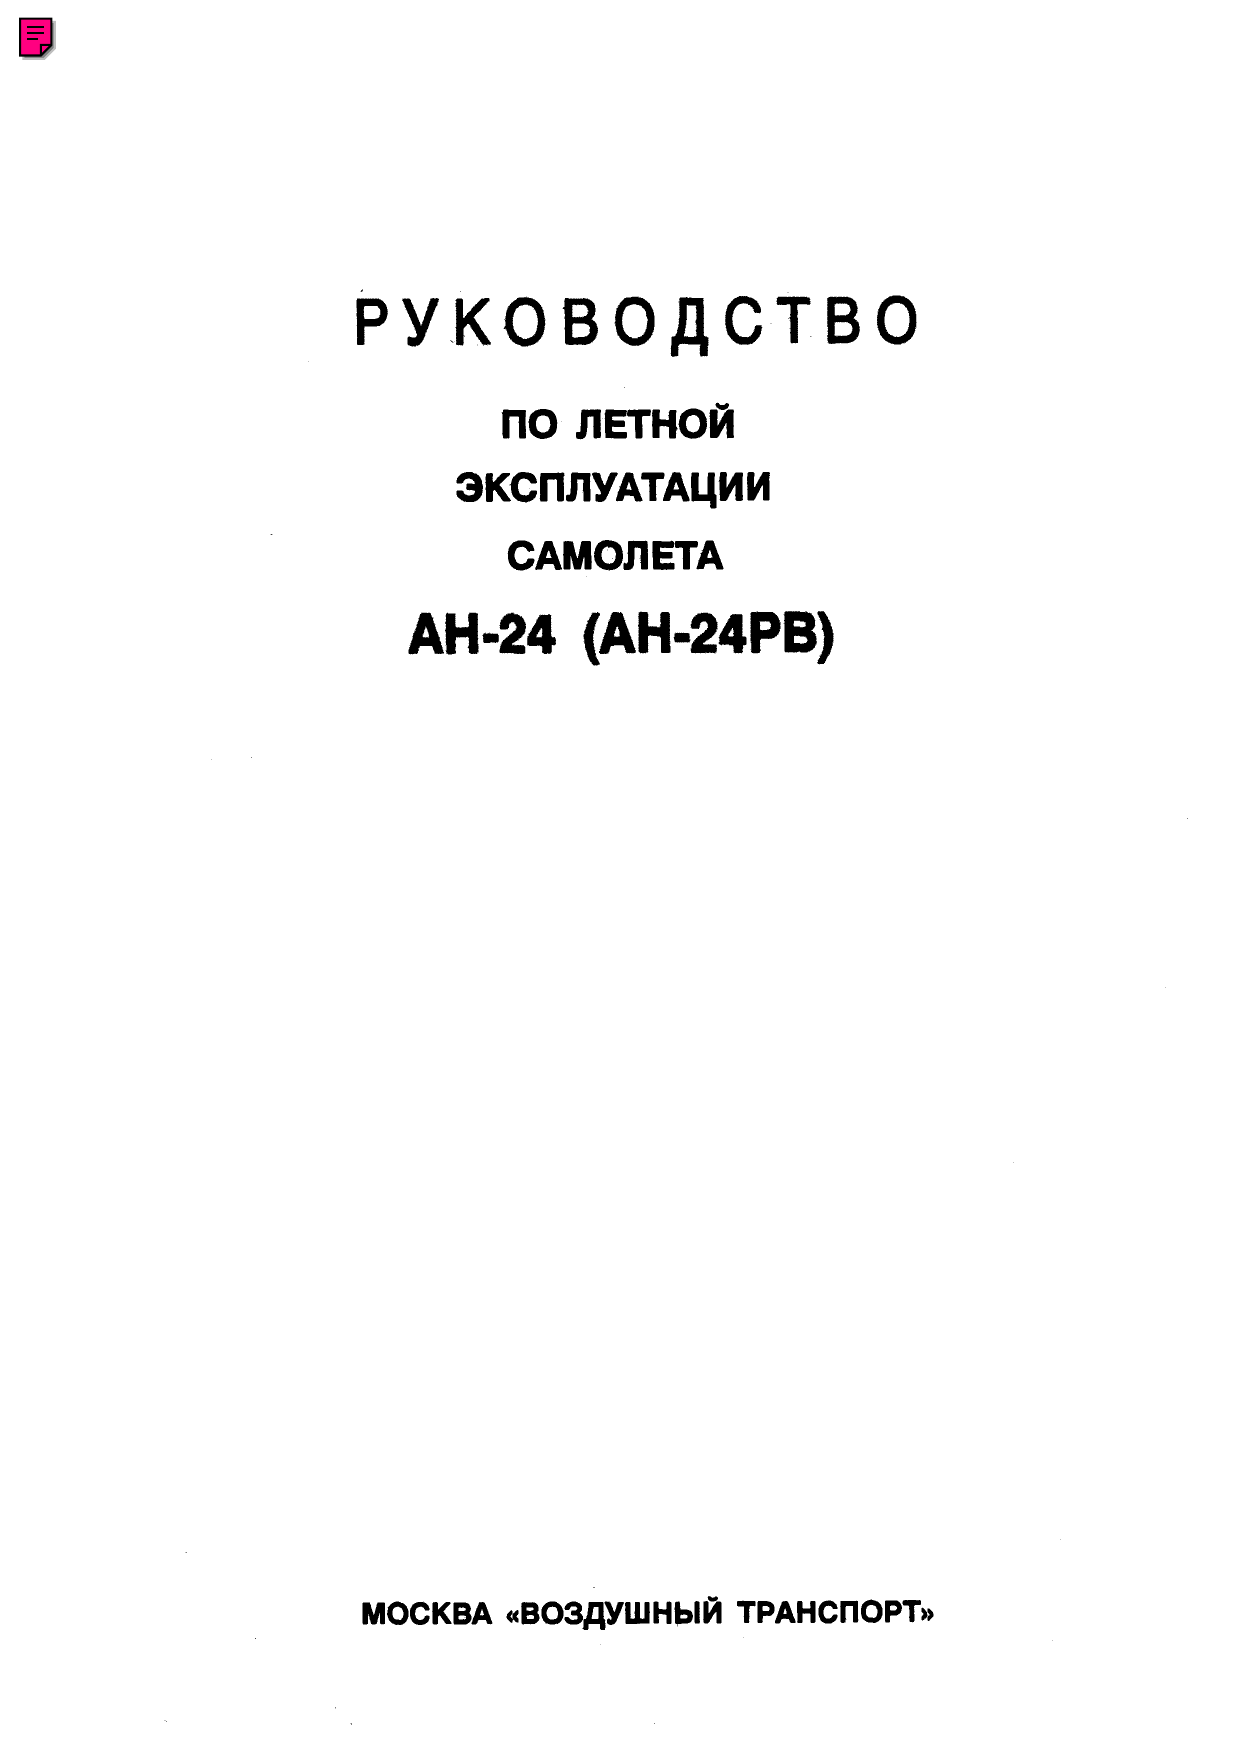 Курсовая работа по теме Расчет аэродинамических характеристик самолета Ан-255